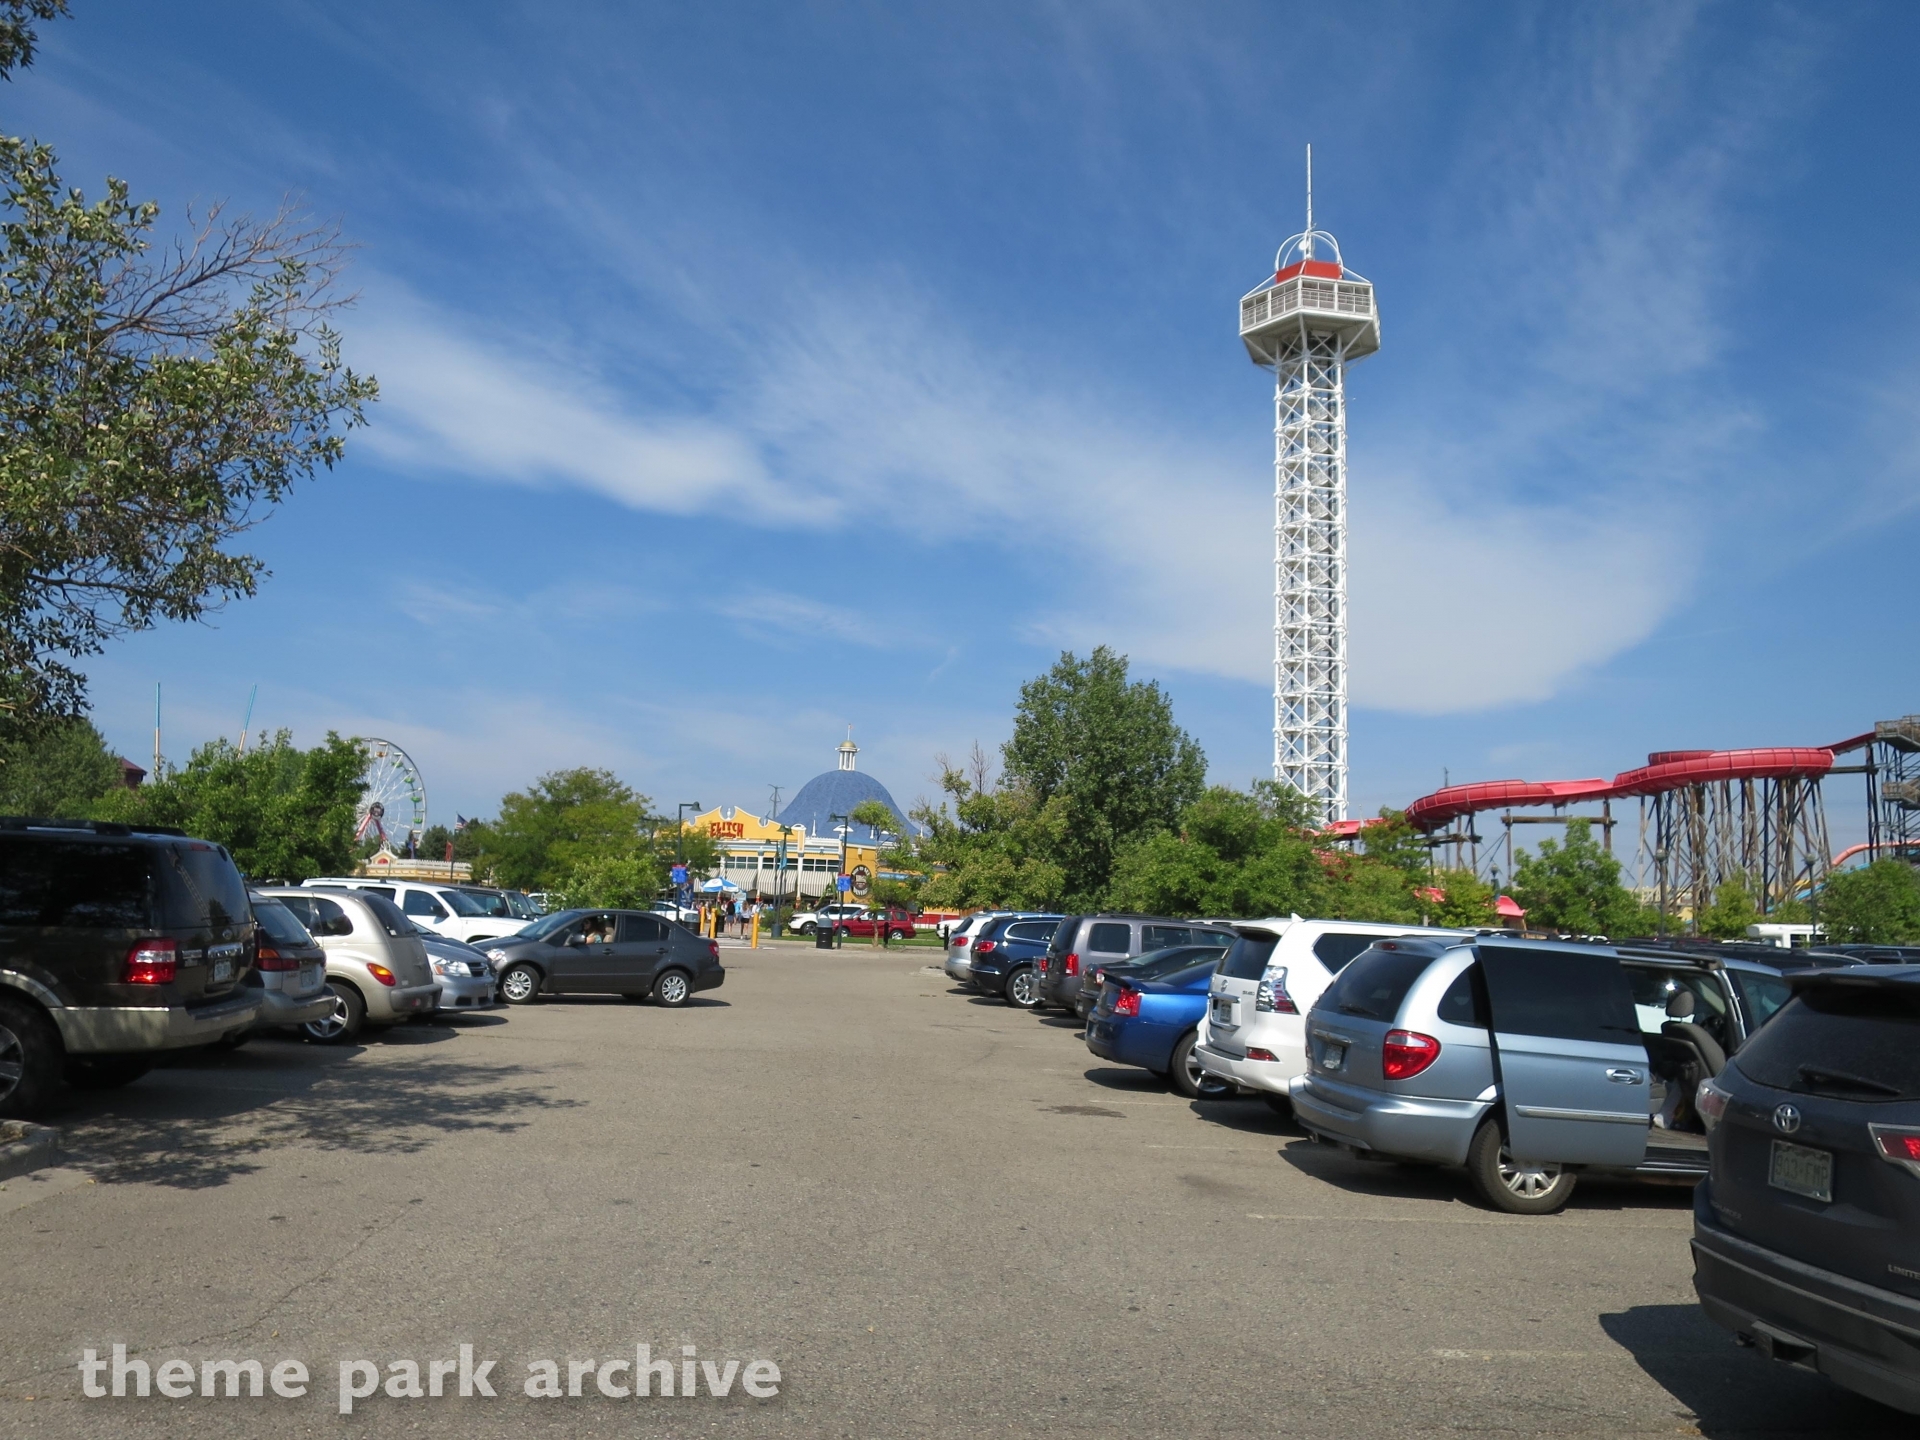 Elitch Gardens 2015 Theme Park Archive